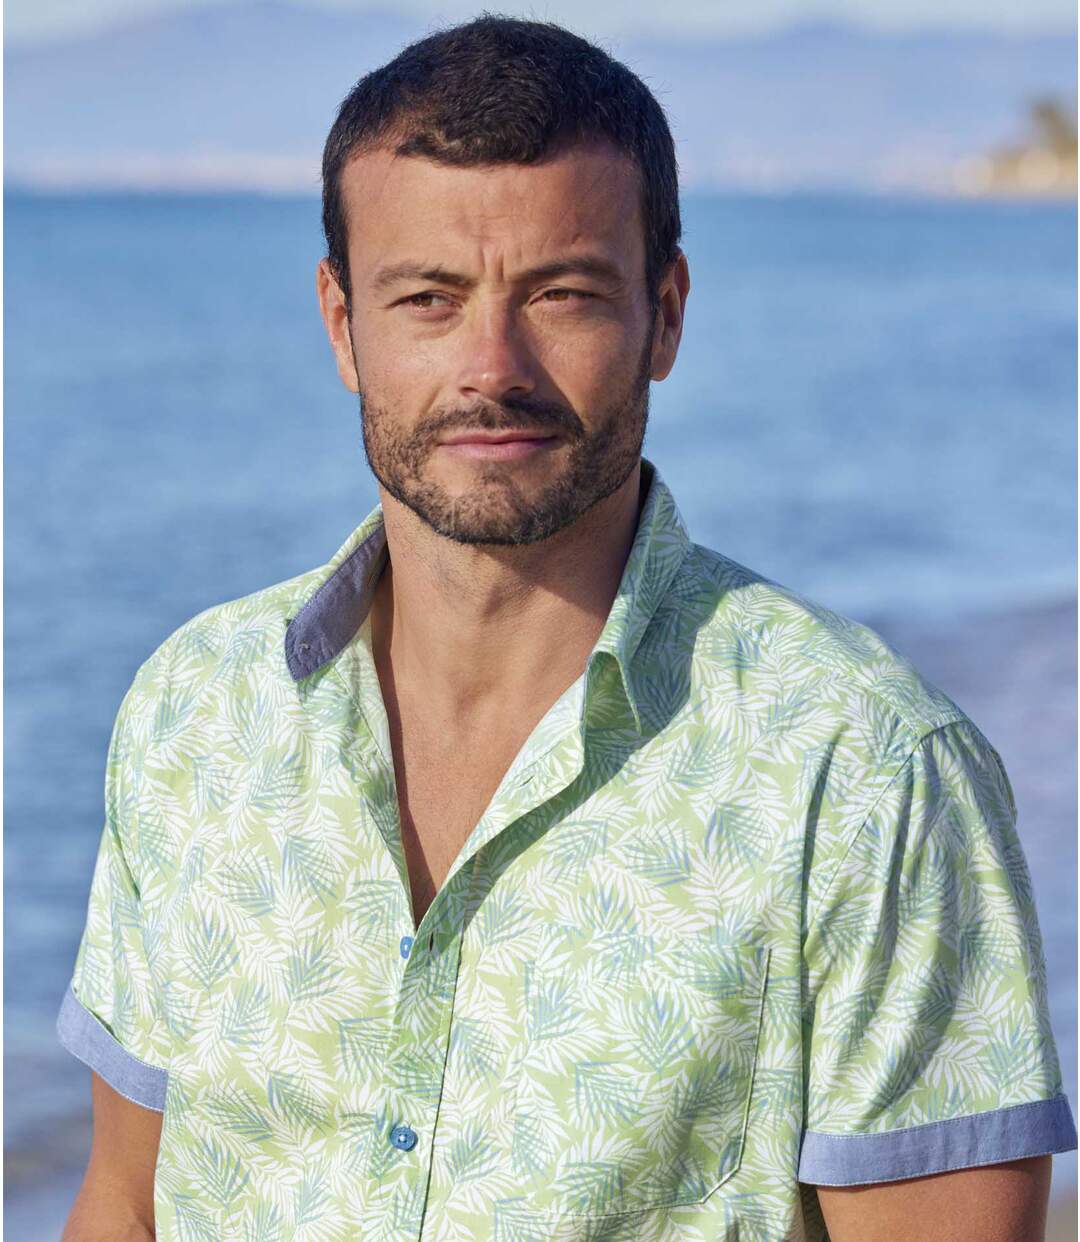 Letní havajská košile s potiskem palmových listů Atlas For Men